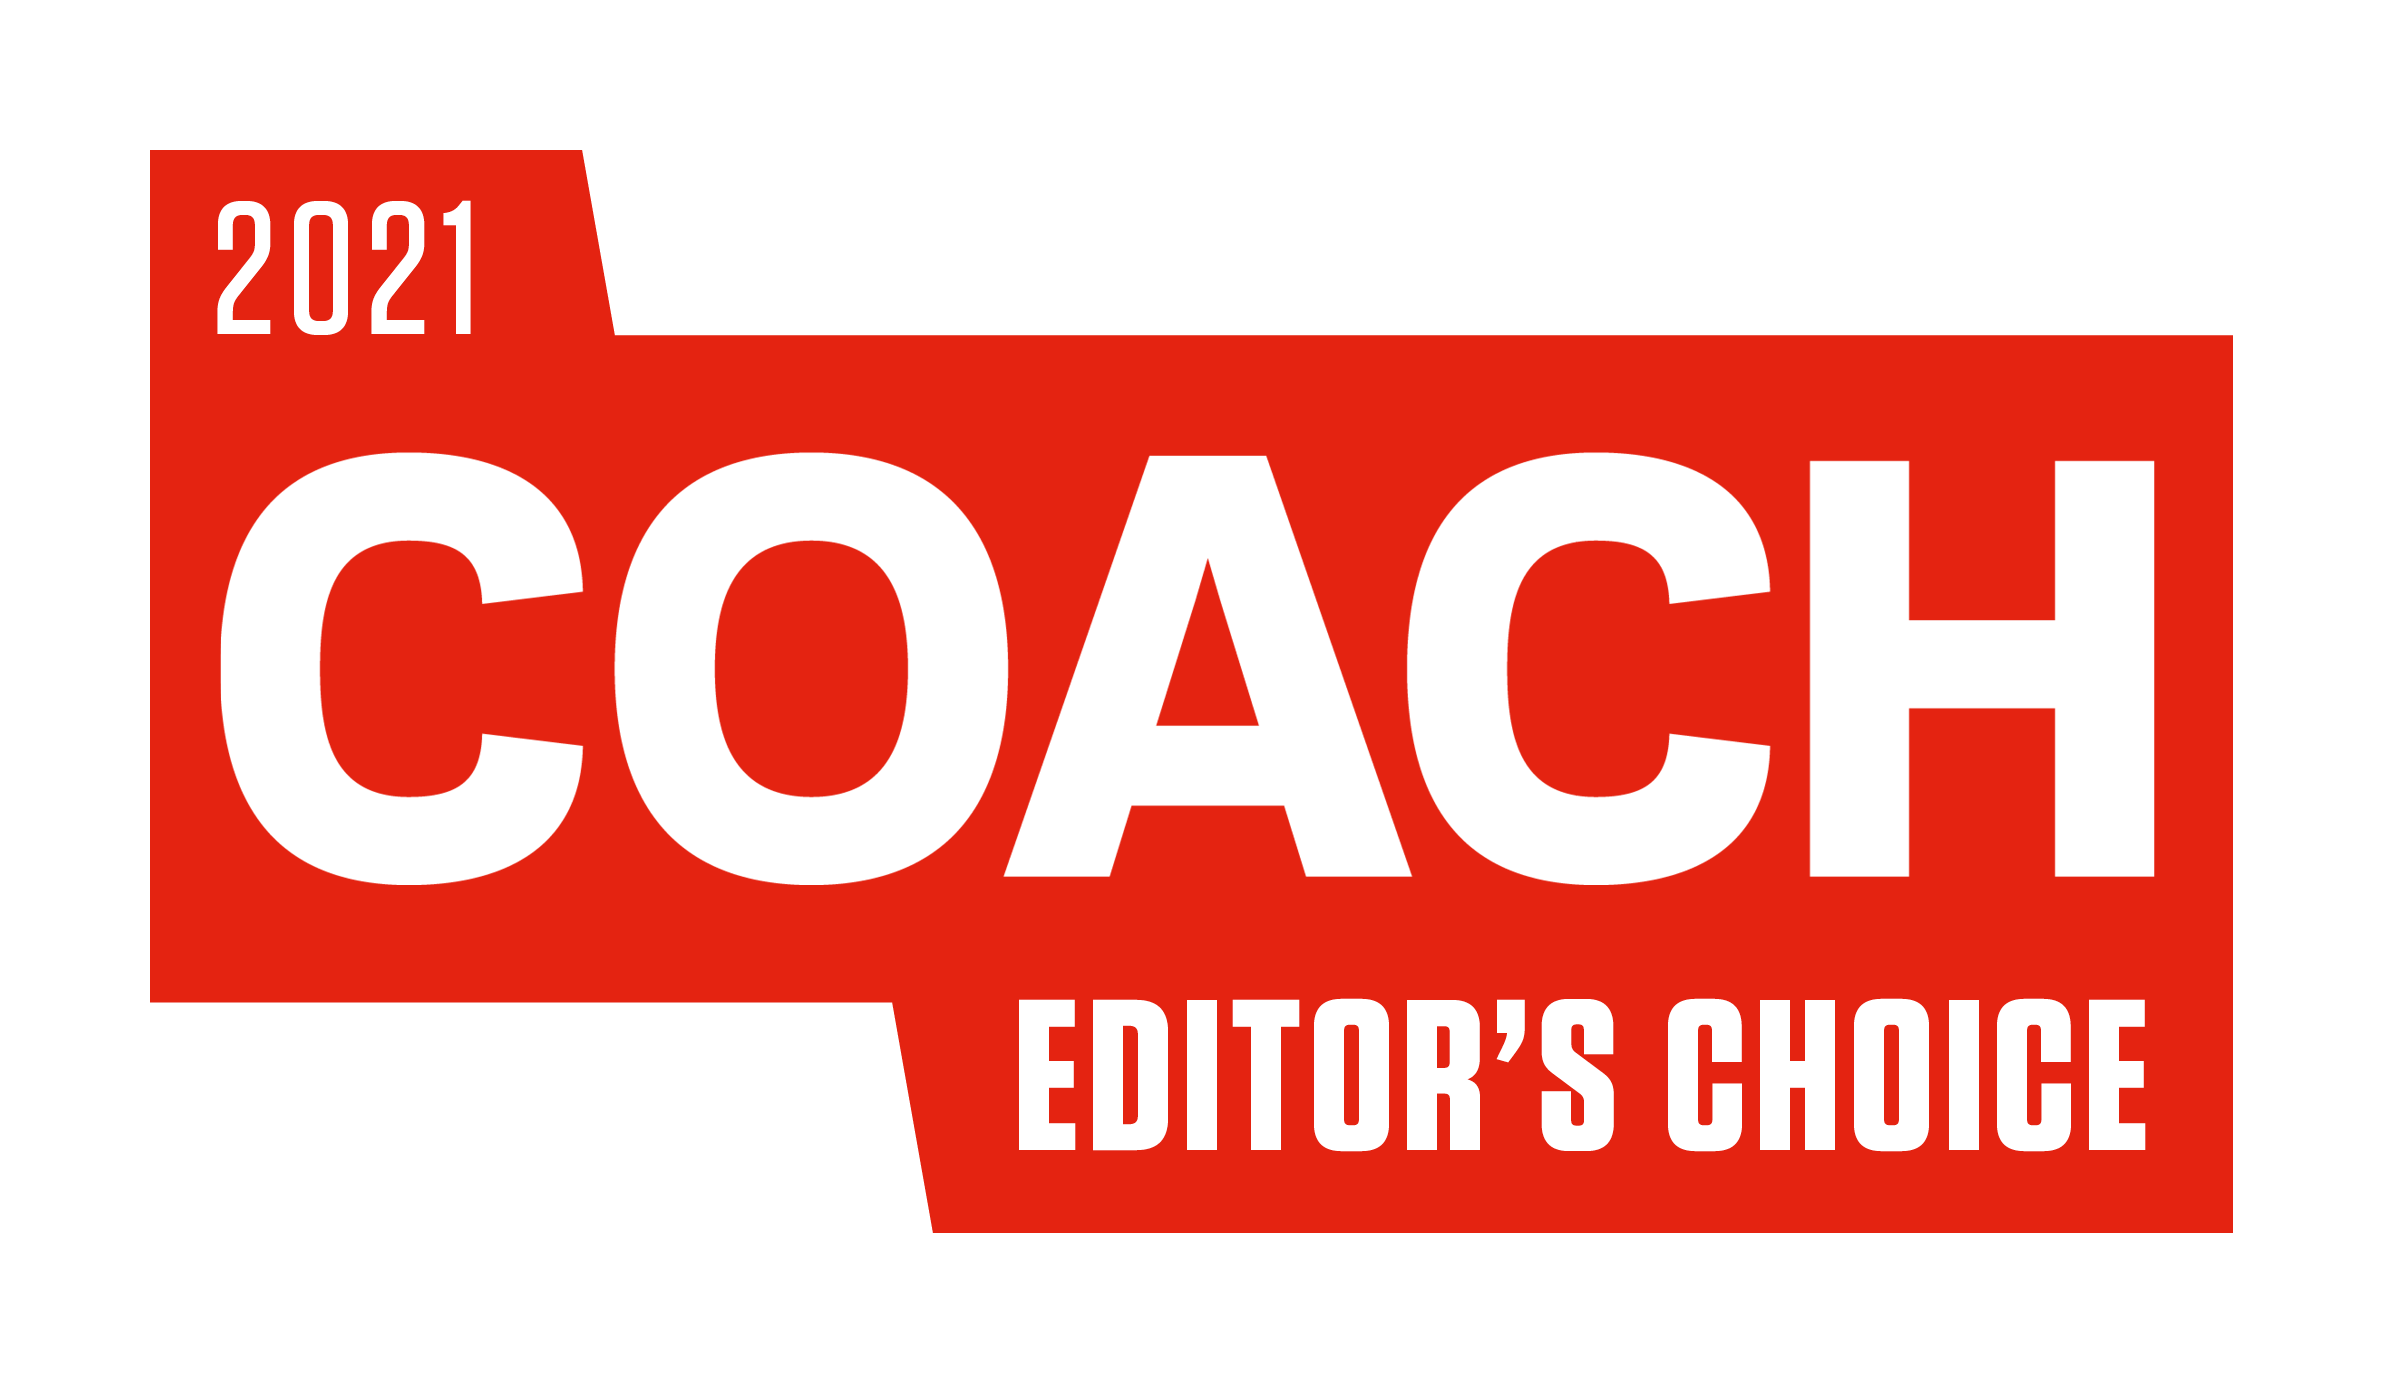 Editor’s Choice 2021 Award Logo